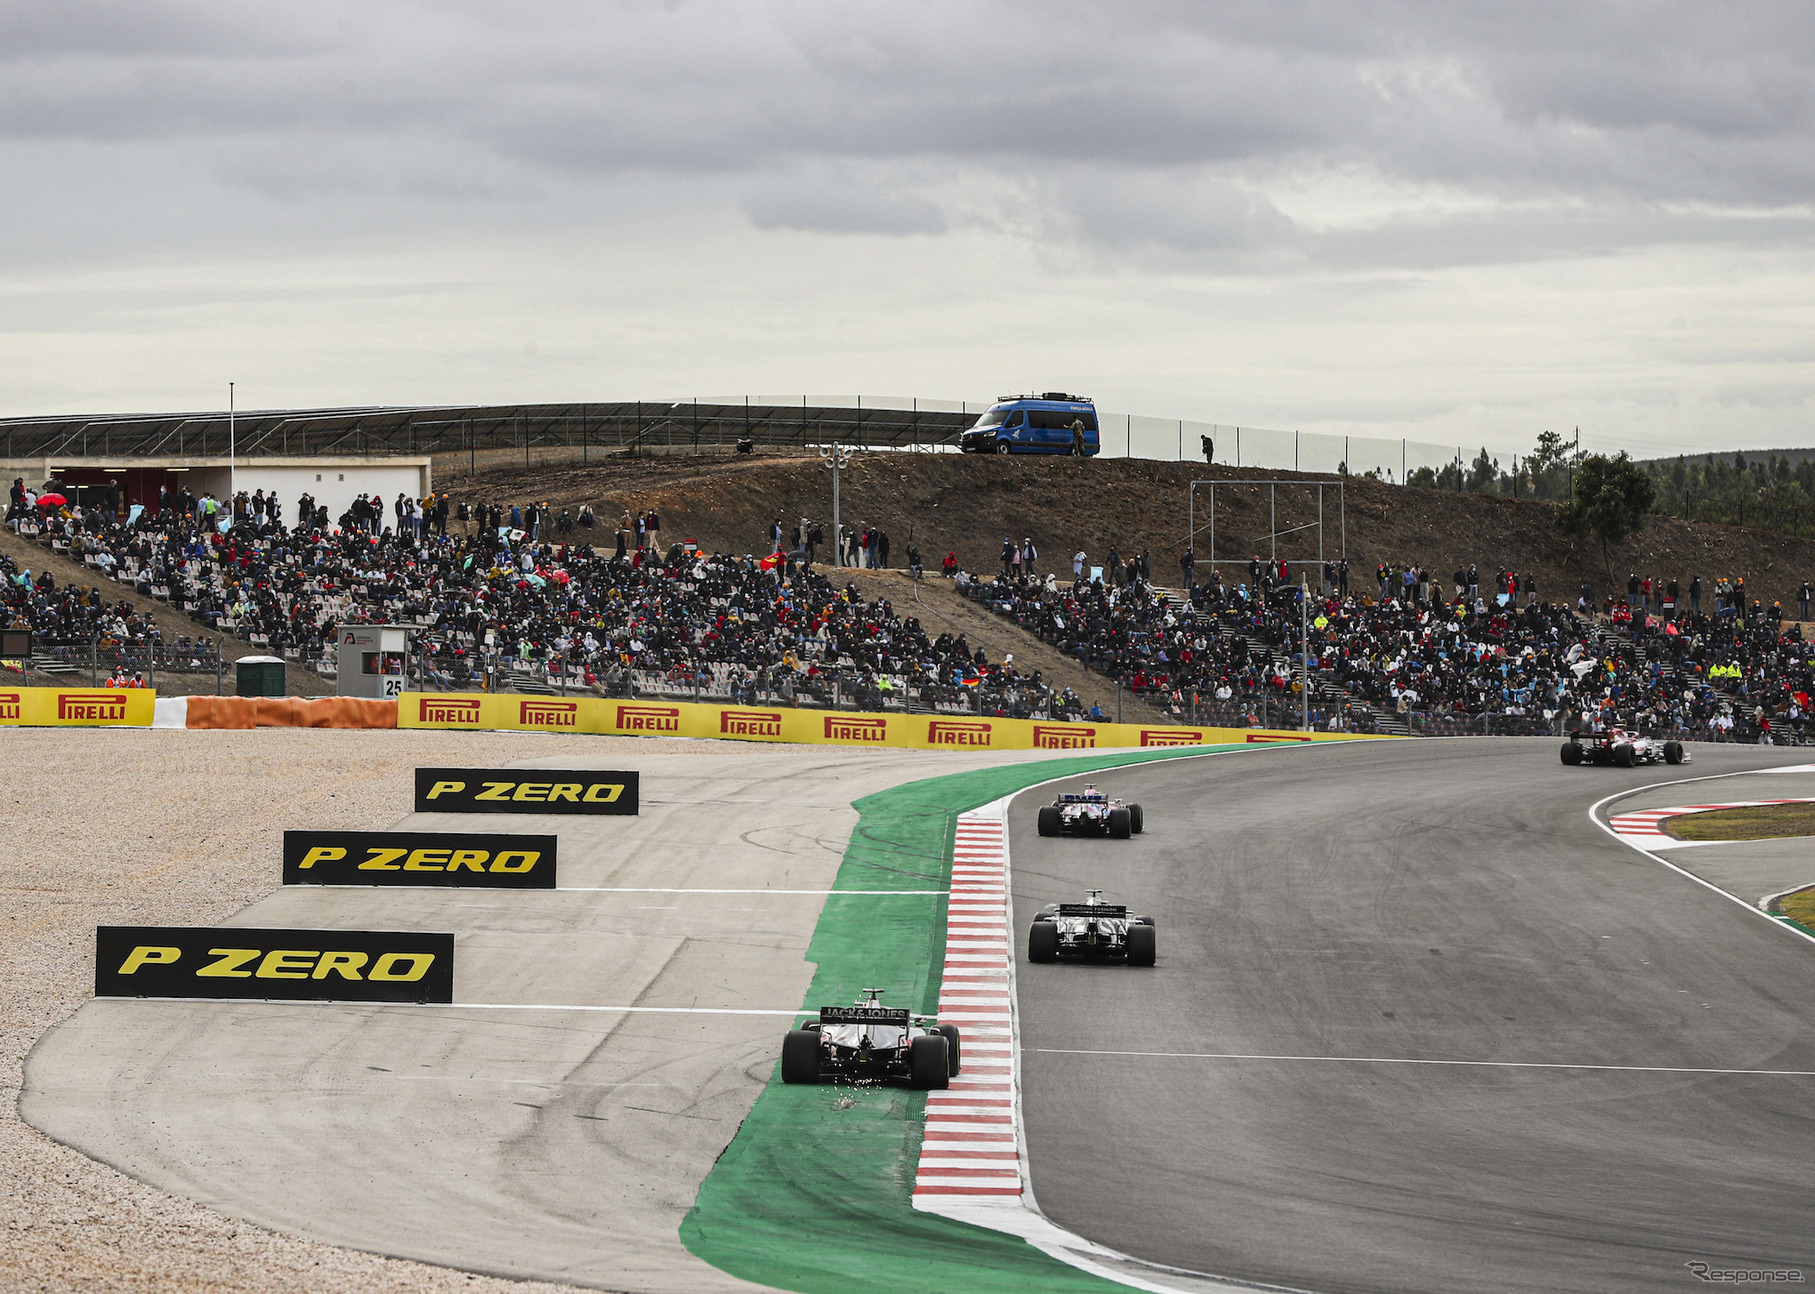 ポルティマオ（アルガルベ・サーキット）で開催された2020年F1ポルトガルGP。